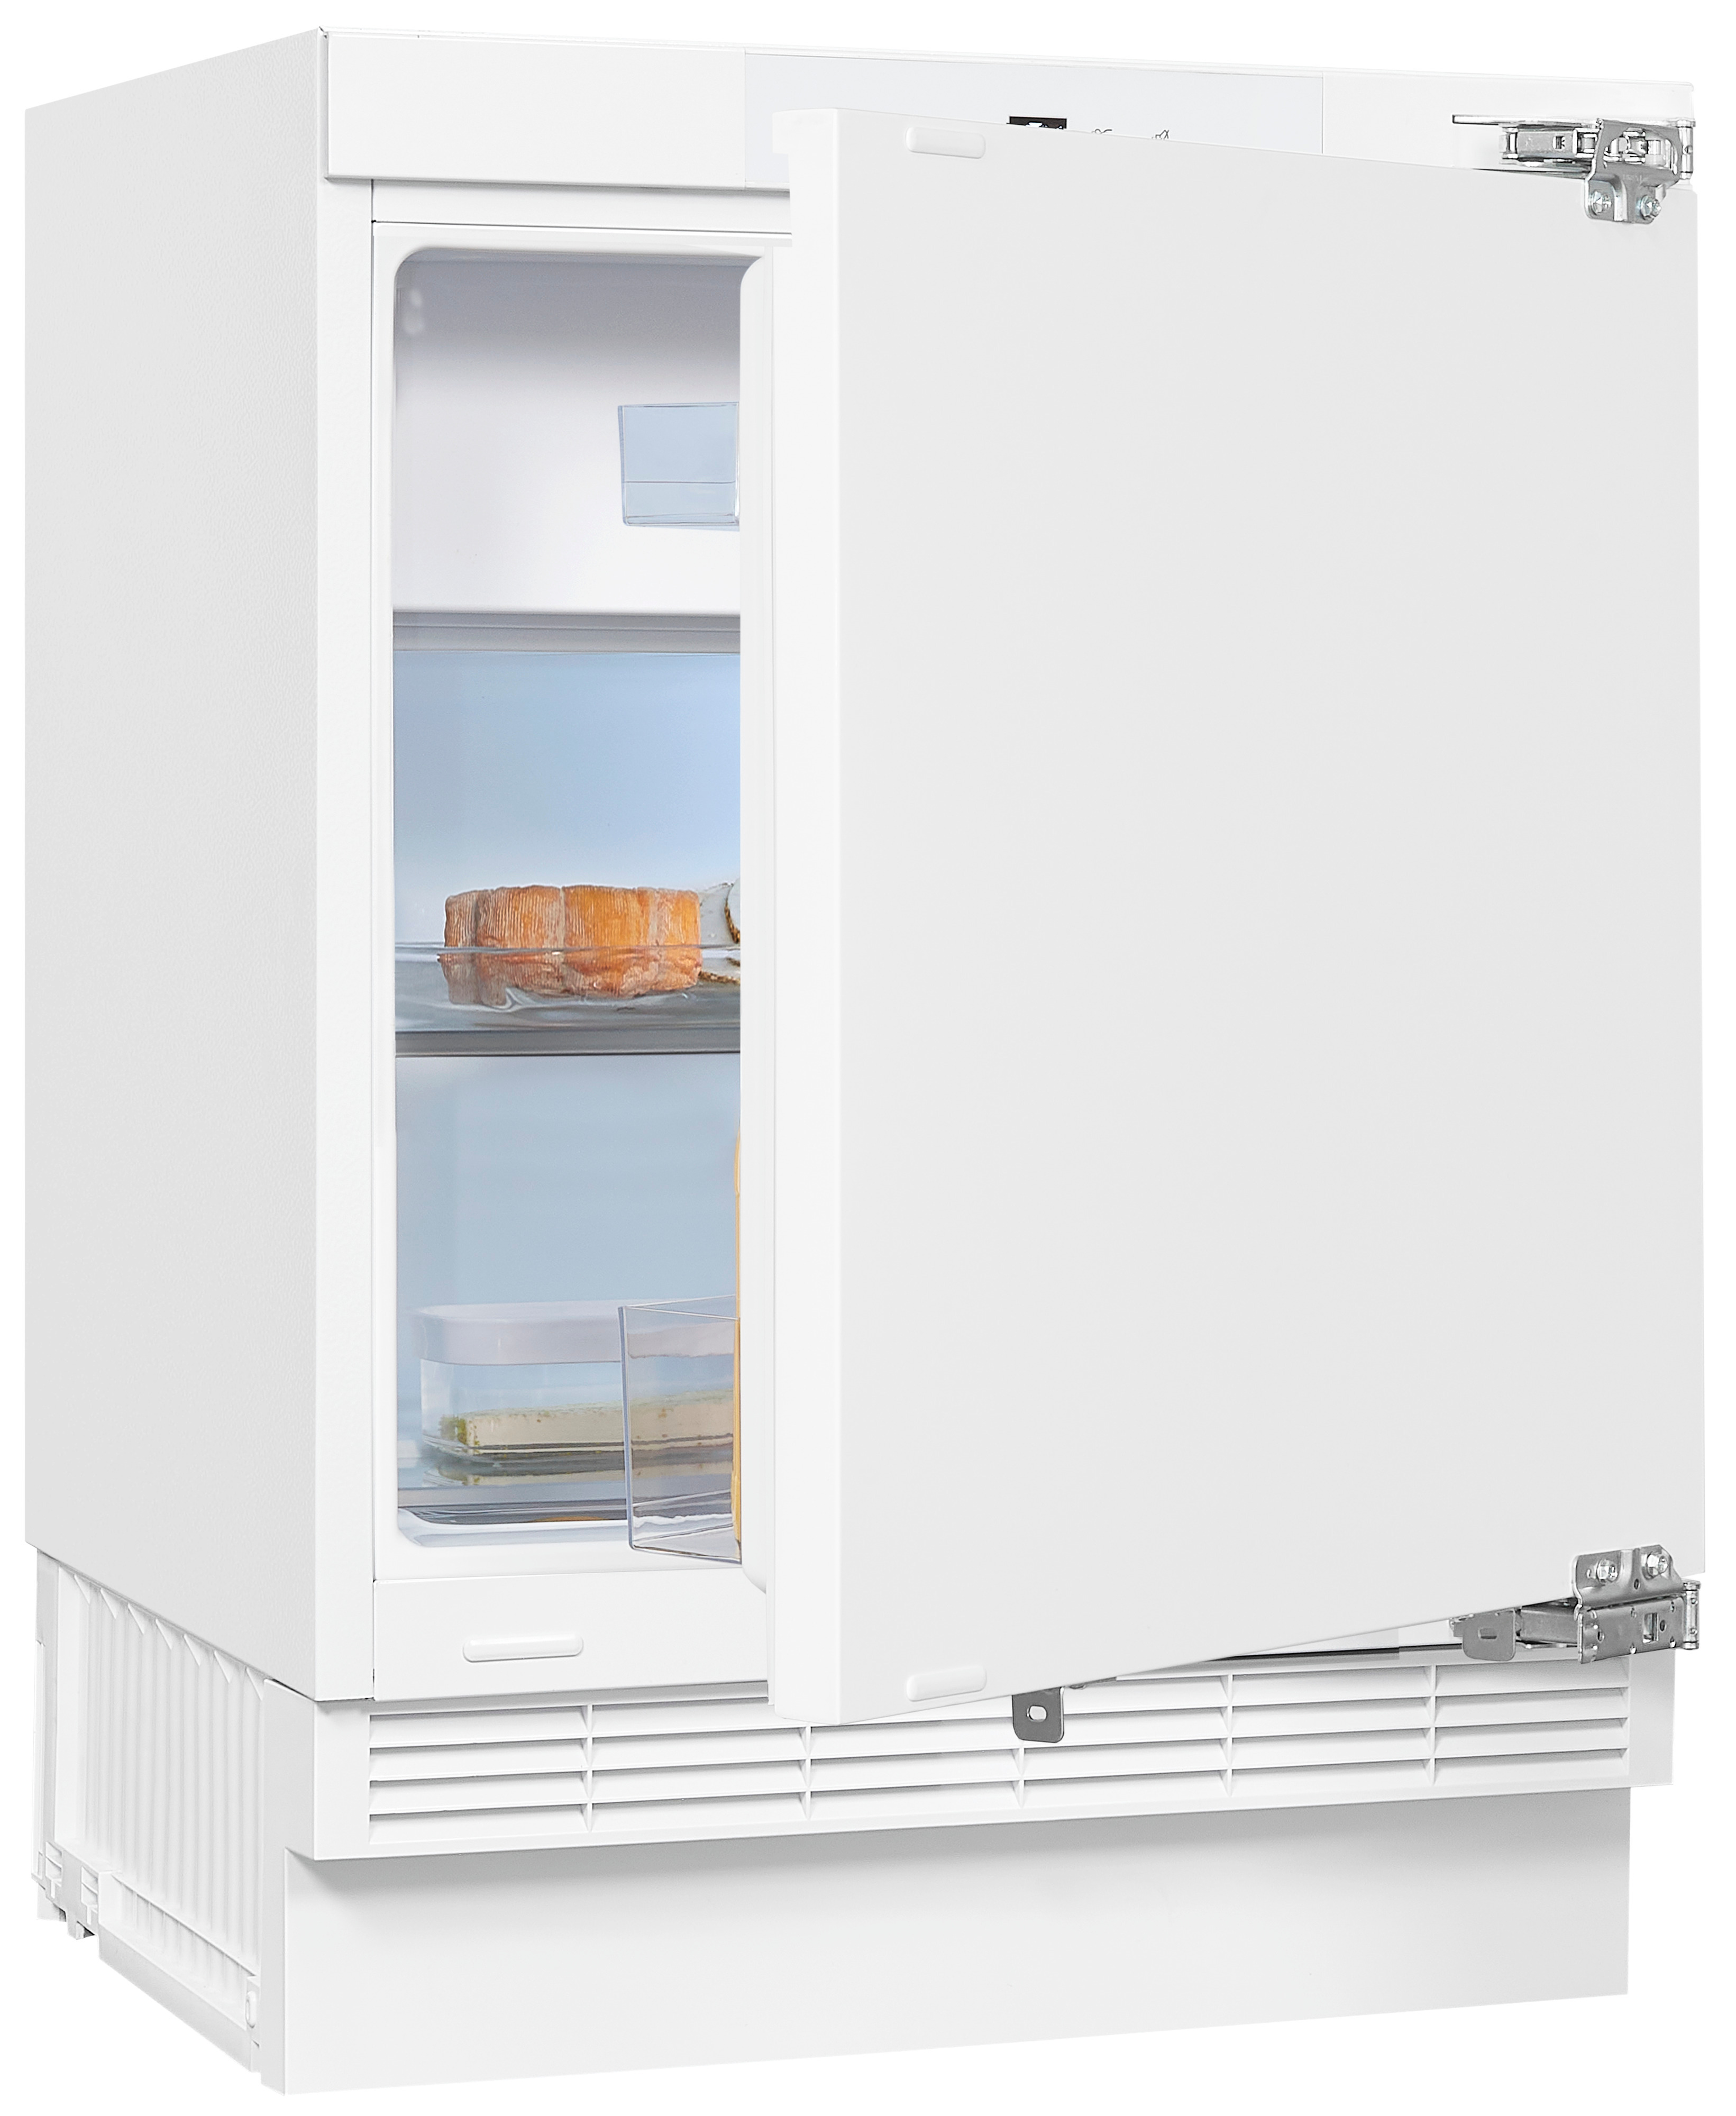 UKS130-4-FE-010D 818 Unterbau-Kühlschränke (D, EXQUISIT hoch, mm Weiß)